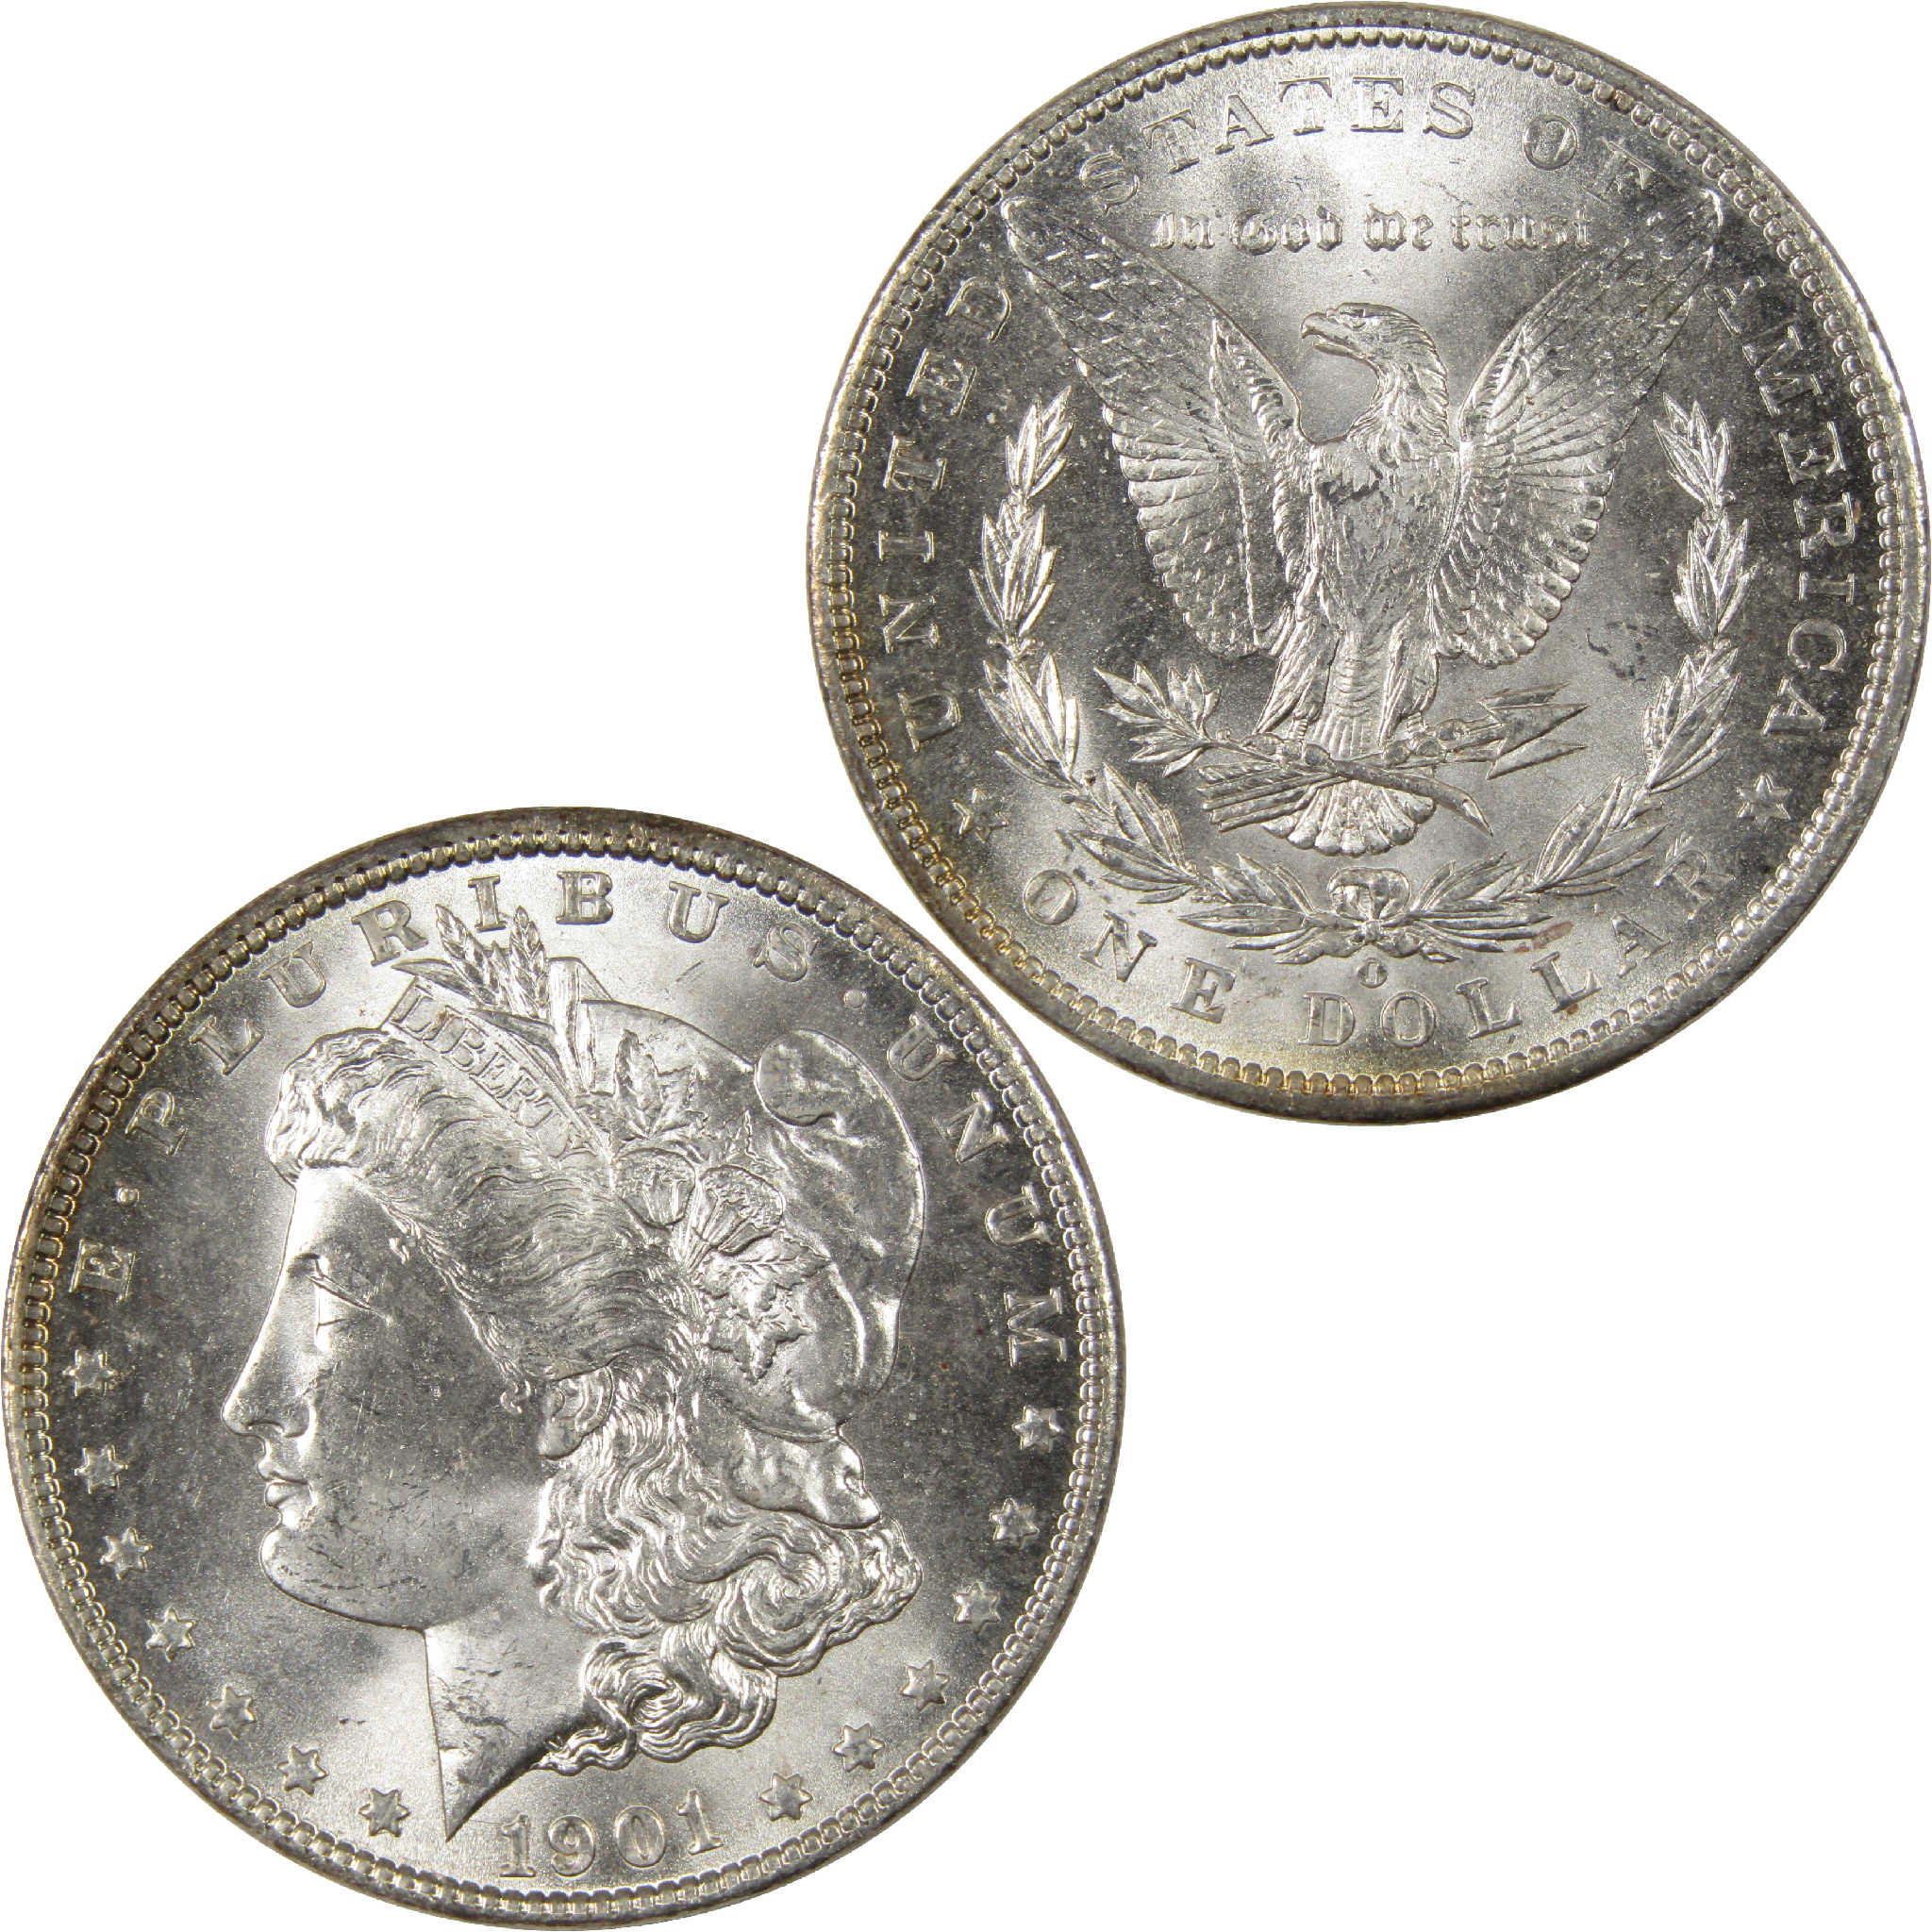 1901 O Morgan Dollar BU Choice Uncirculated Silver $1 Coin - Morgan coin - Morgan silver dollar - Morgan silver dollar for sale - Profile Coins &amp; Collectibles